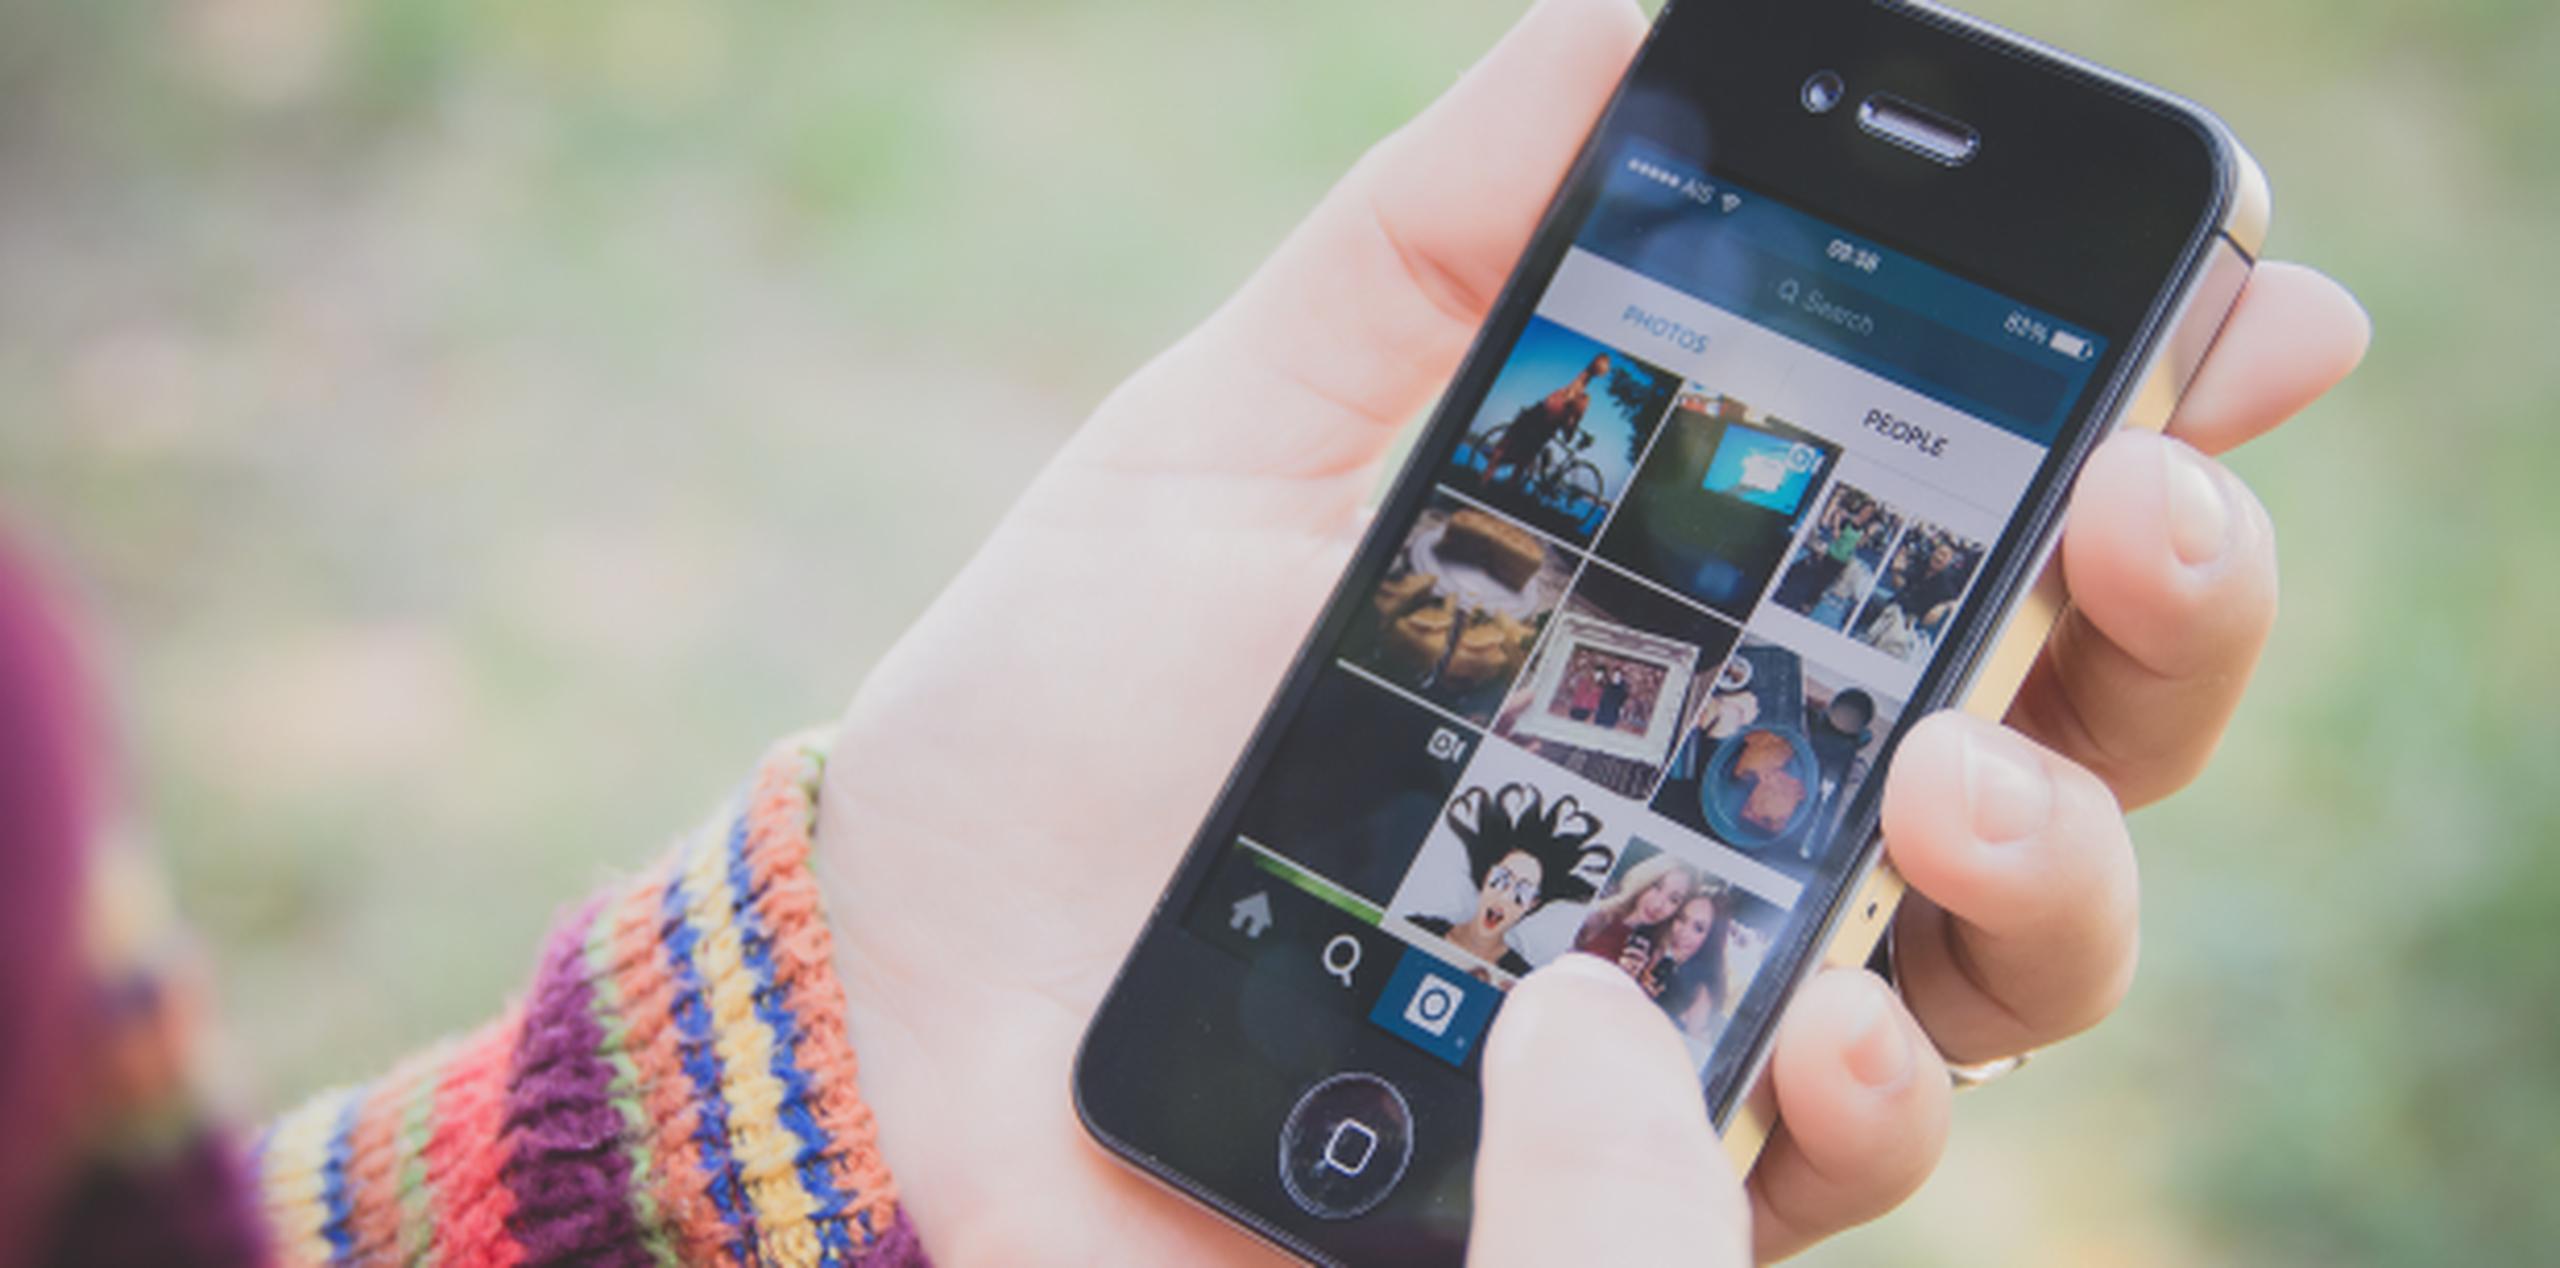 Instagram posee 600 millones de usuarios. (Shutterstock)